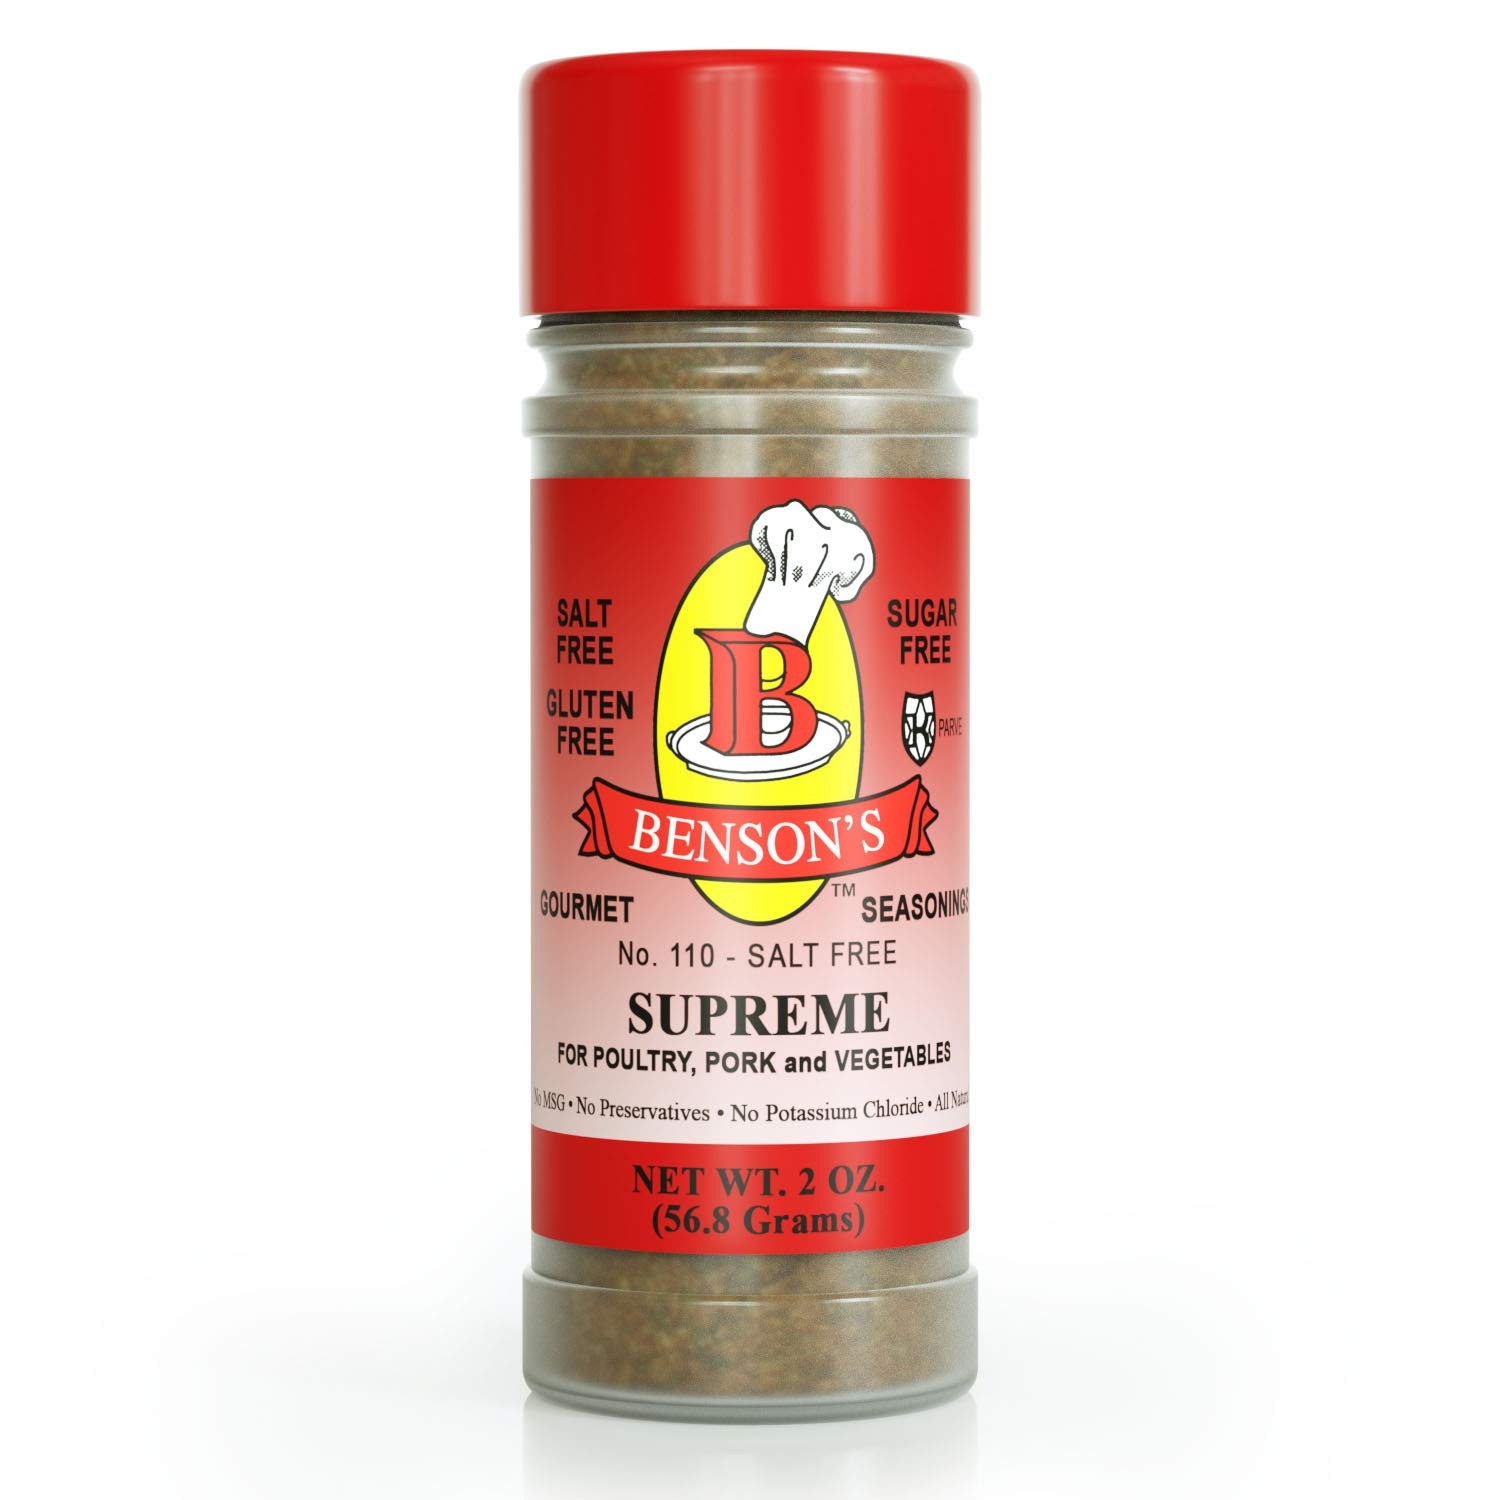 Salt Free Seasoning Spice Set